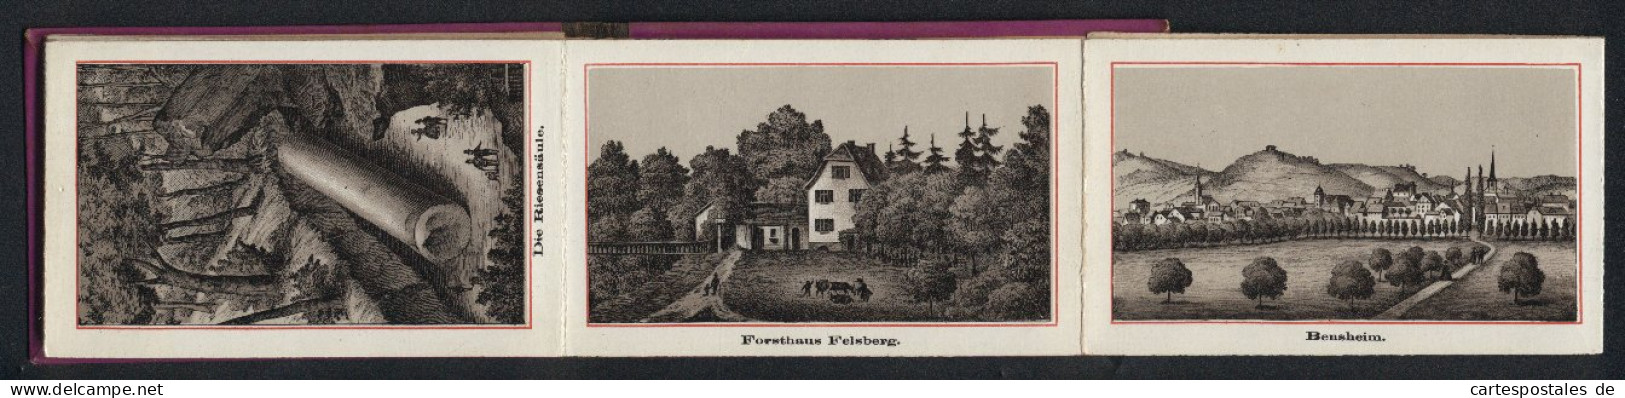 Leporello-Album Bergstrasse Mit 12 Lithographie-Ansichten, Bensheim, Heppenheim, Forsthaus Felsberg, Riesensäule, Sch  - Litografía